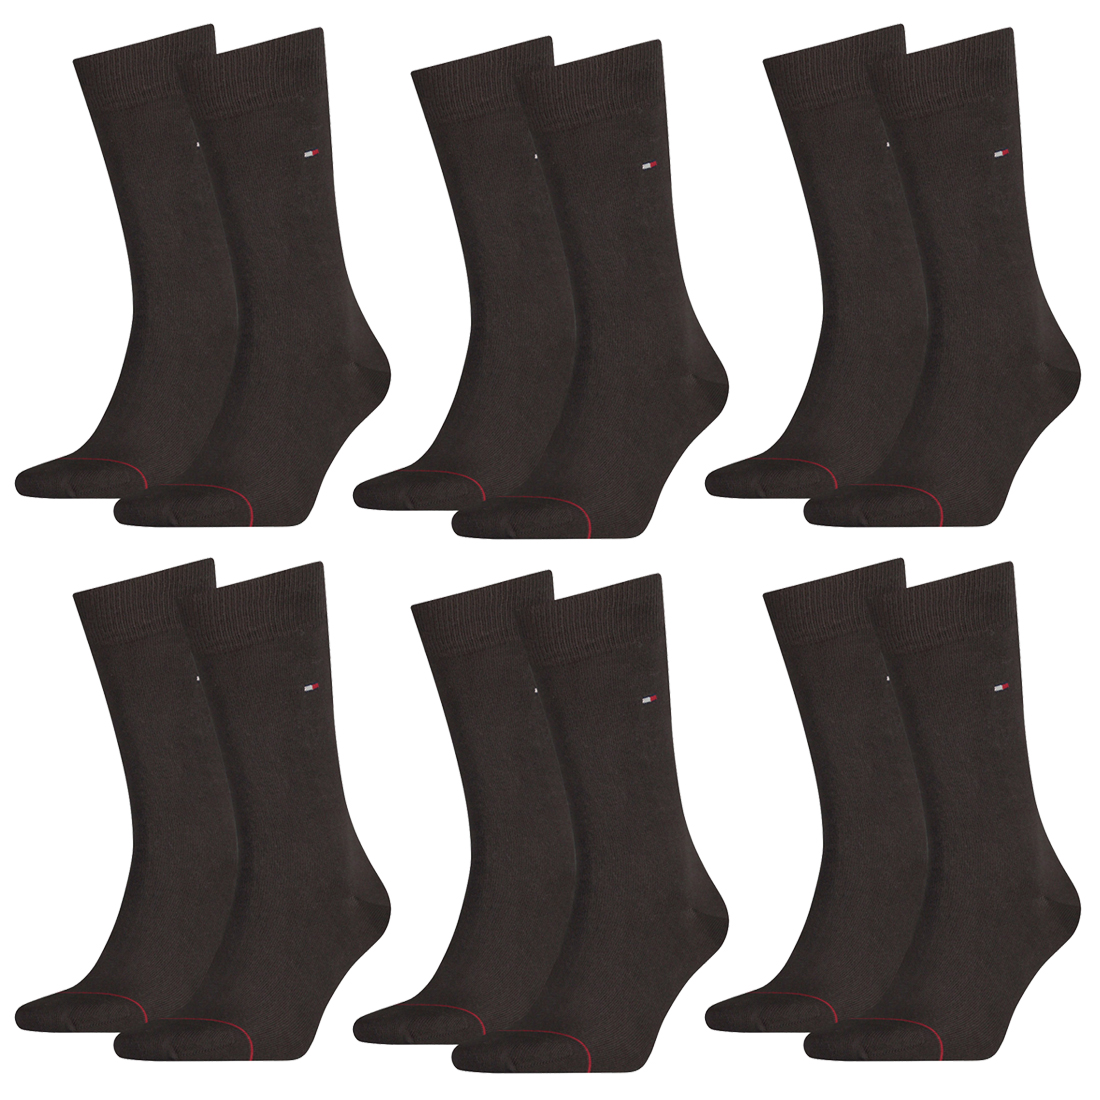 12 Paar TOMMY HILFIGER Classic Socken Gr. 39 - 49 Herren Business Socken von Tommy Hilfiger